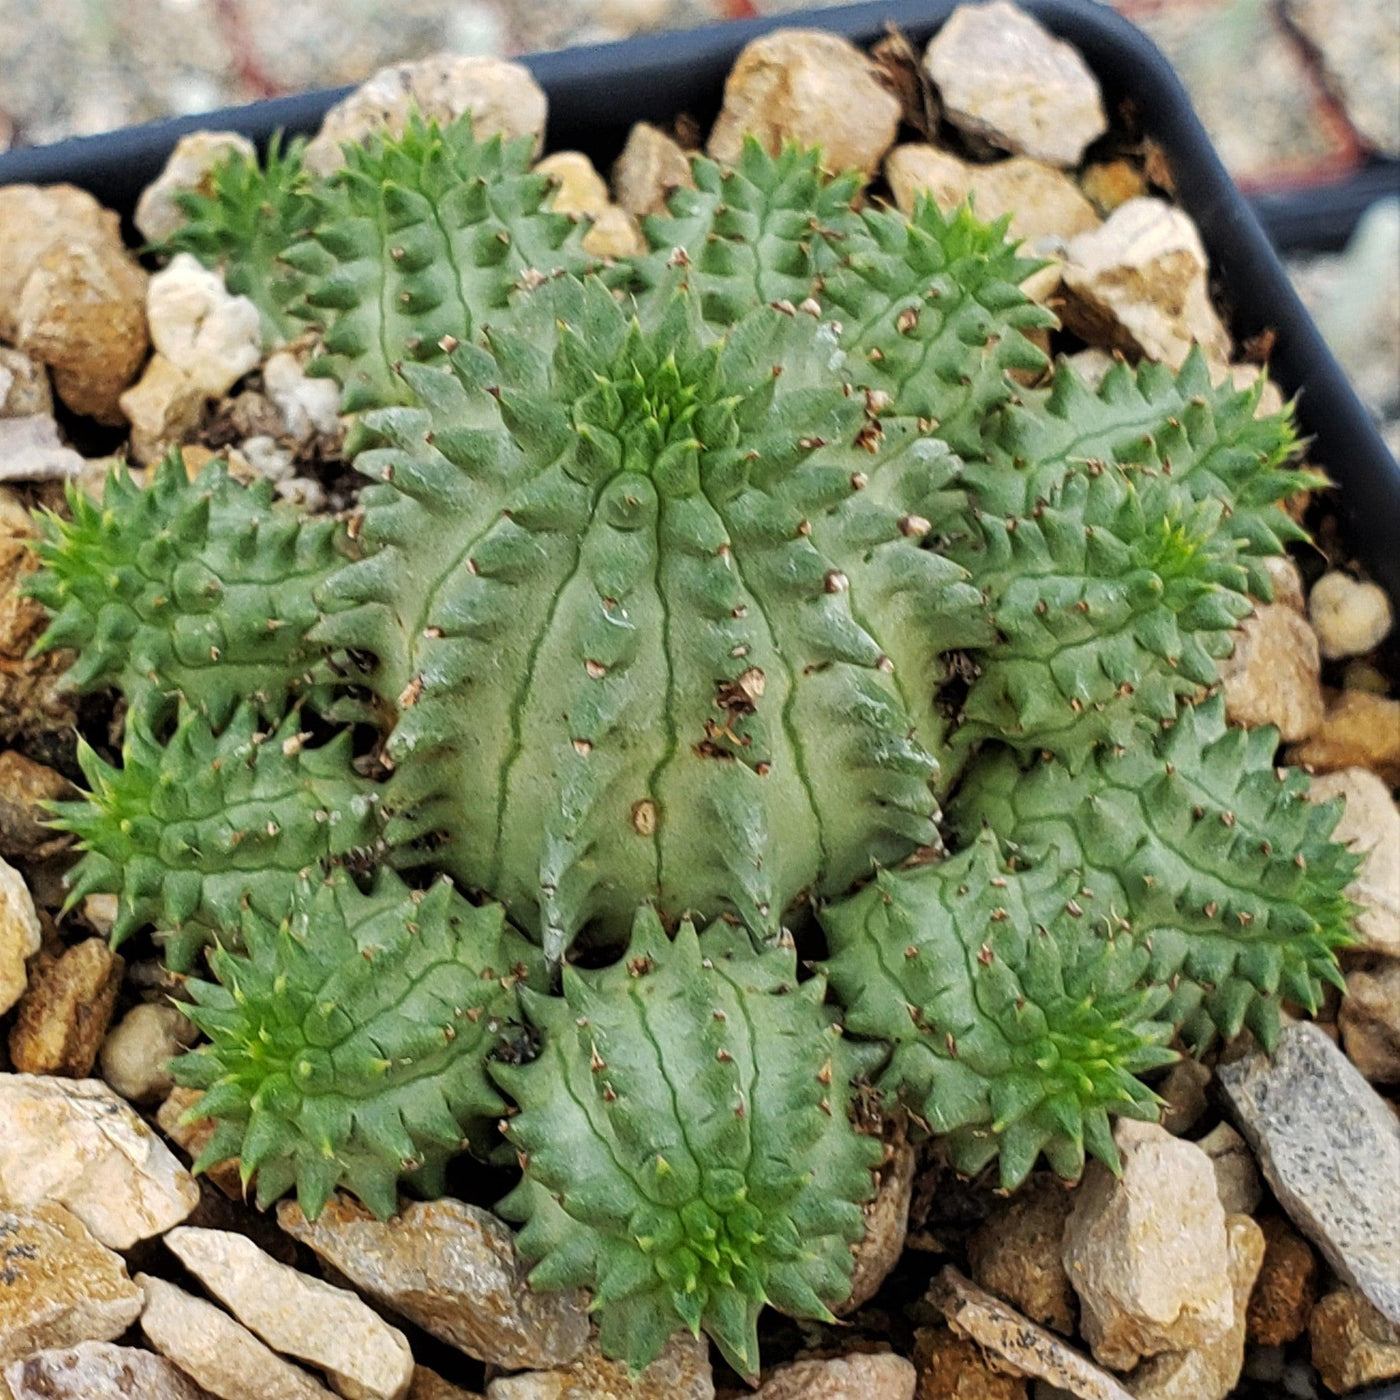 Euphorbia susannae multihead